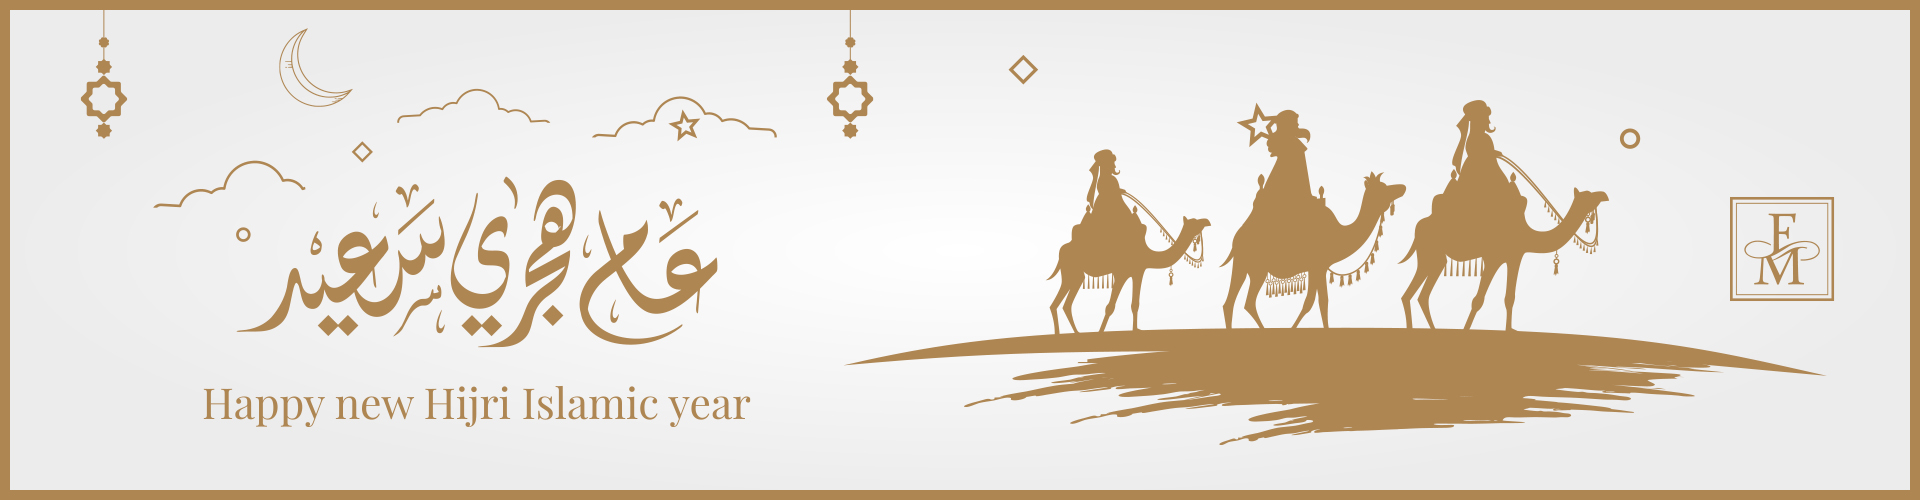 HAPPY NEW HIJRI ISLAMIC YEAR!